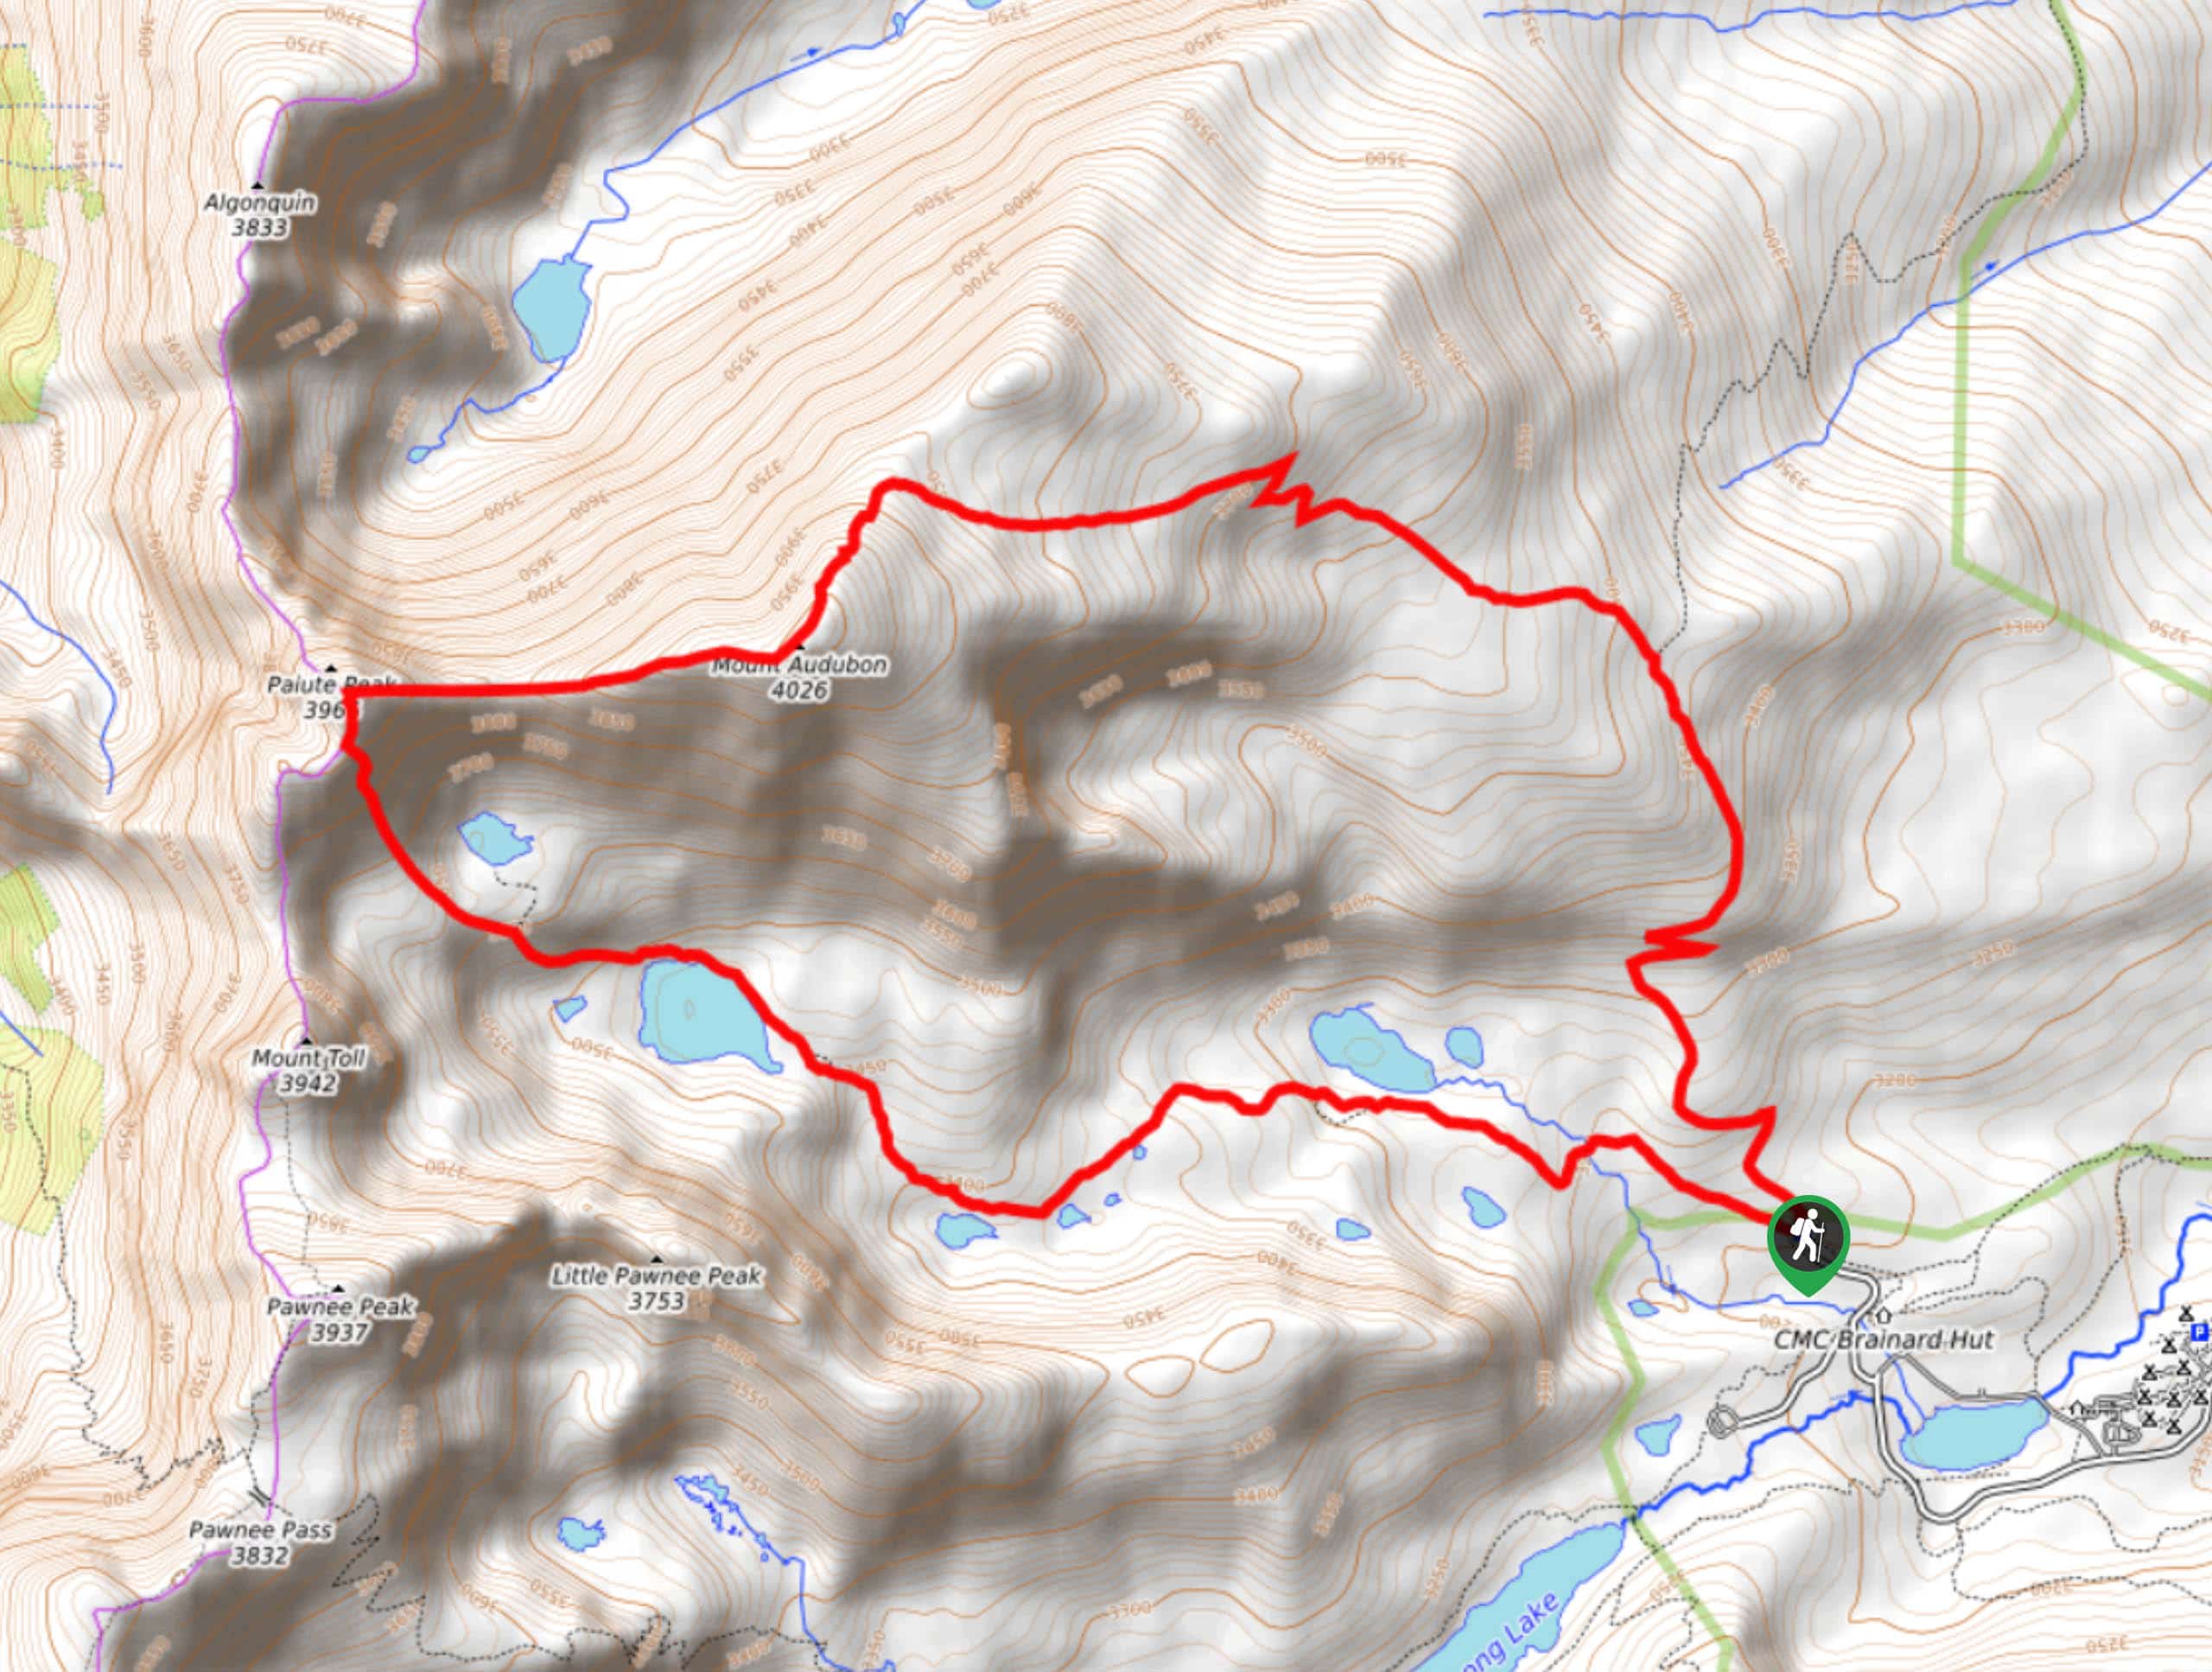 Mount Audubon and Paiute Peak Hike Map